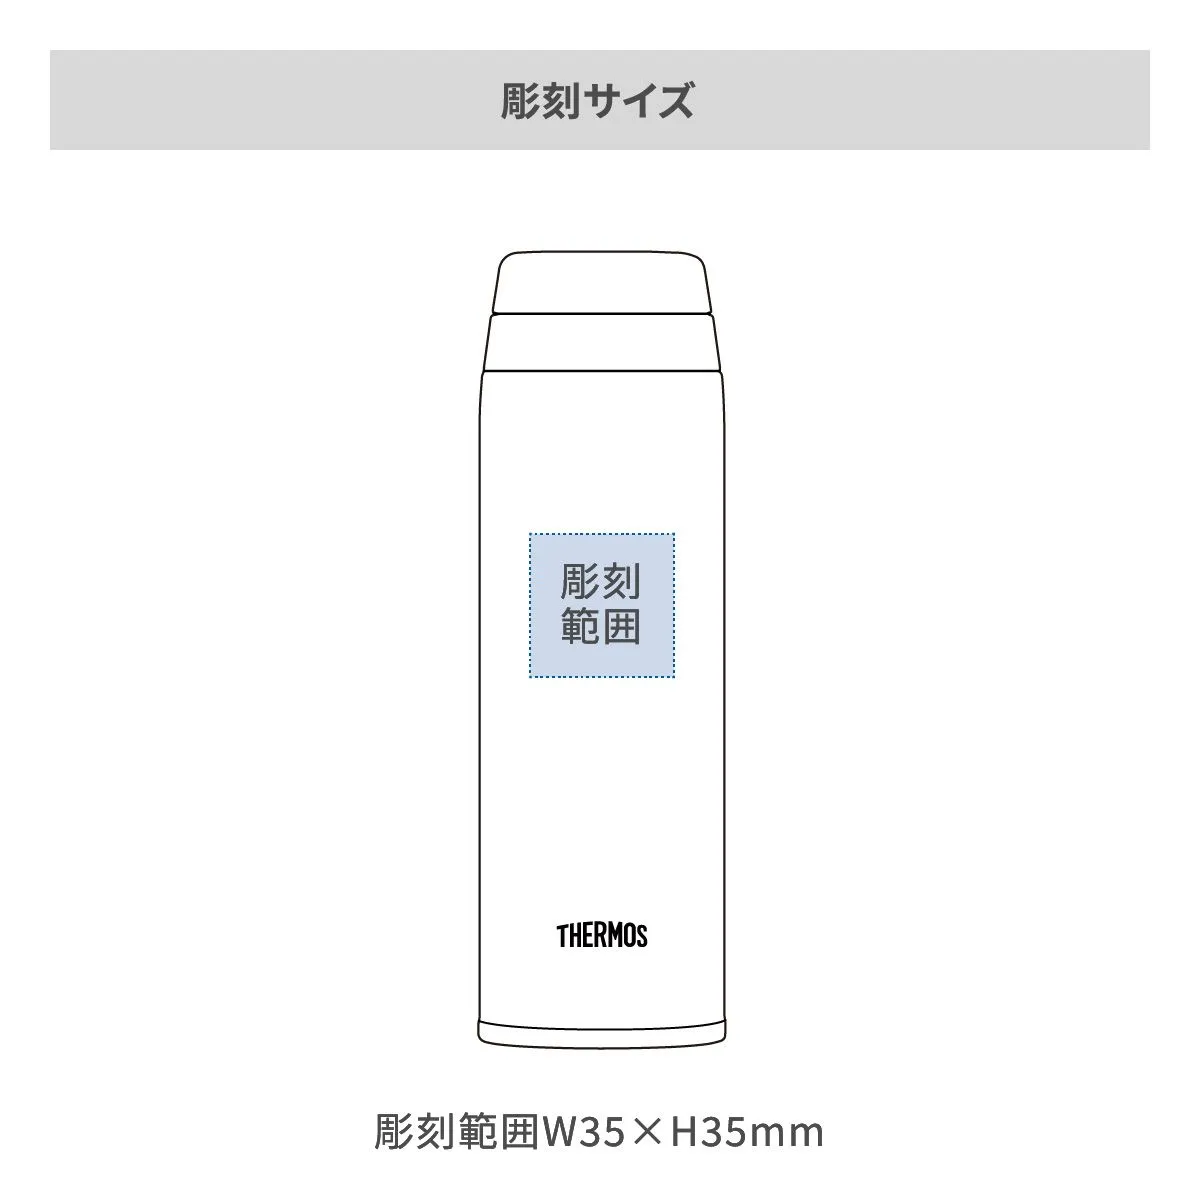 サーモス 真空断熱ケータイマグ 350ml【オリジナルステンレスボトル / レーザー彫刻】 画像2